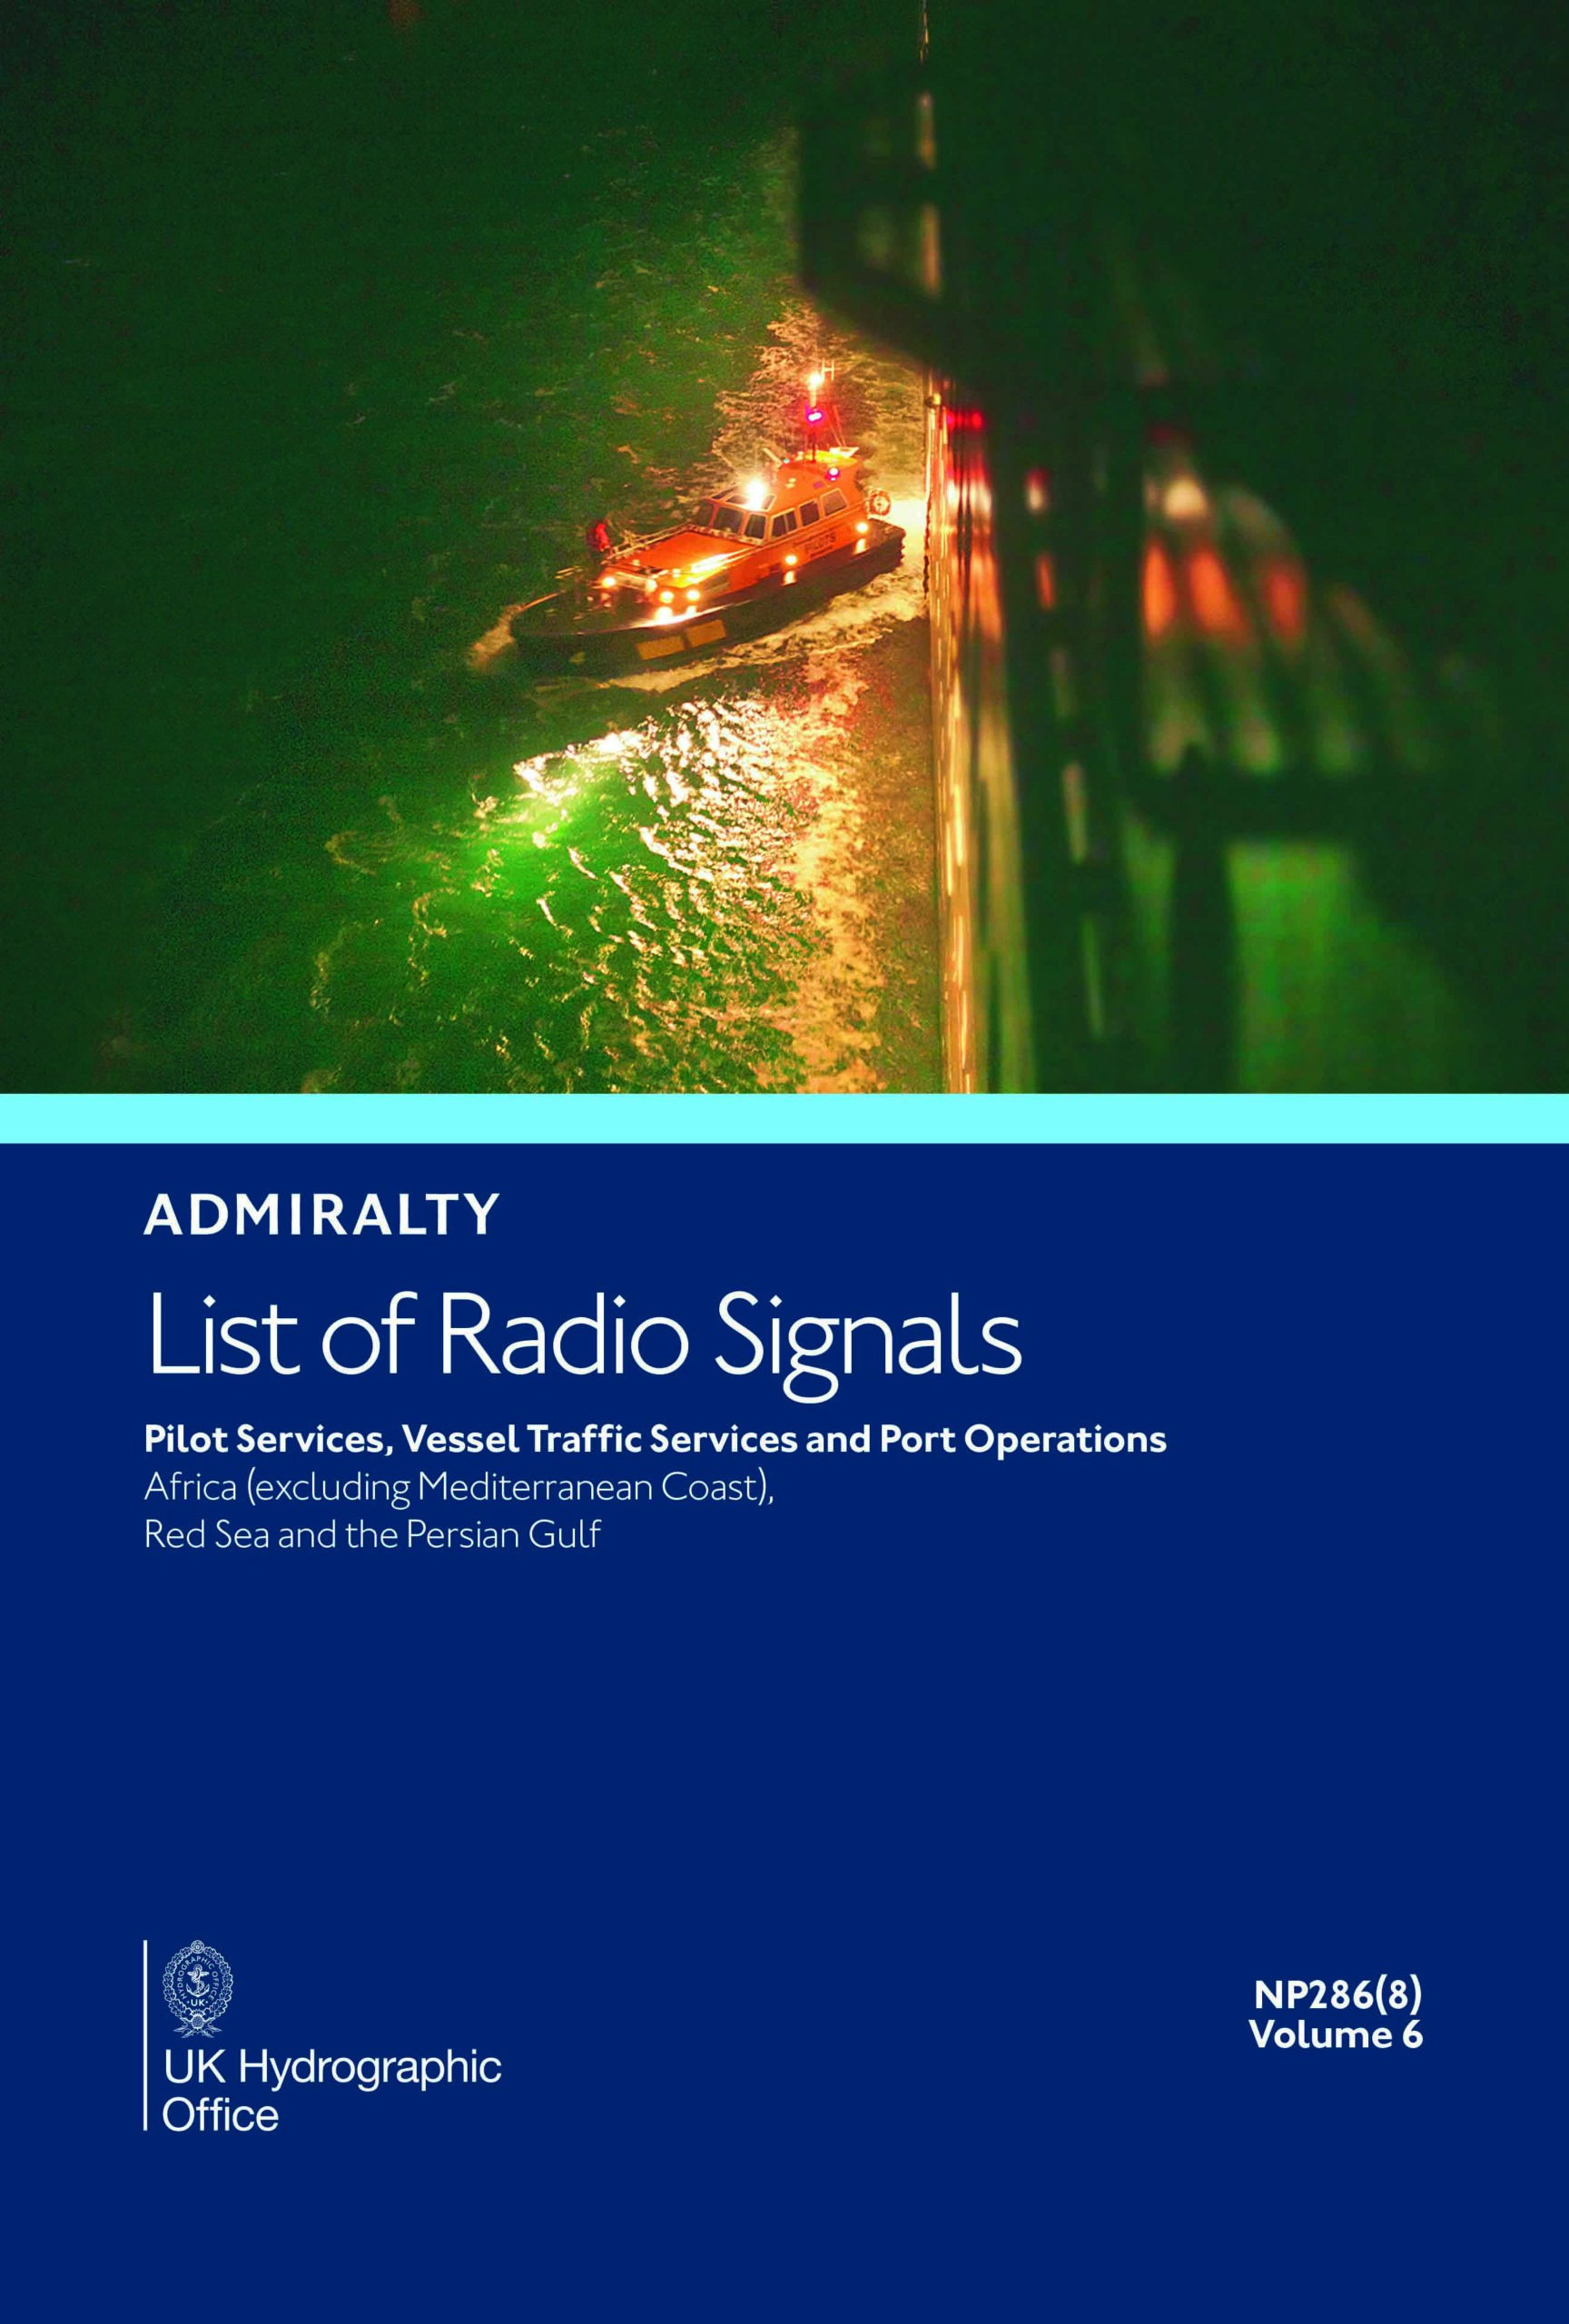 NP286(8) List of Radio Signals Vol. 6 Part 8